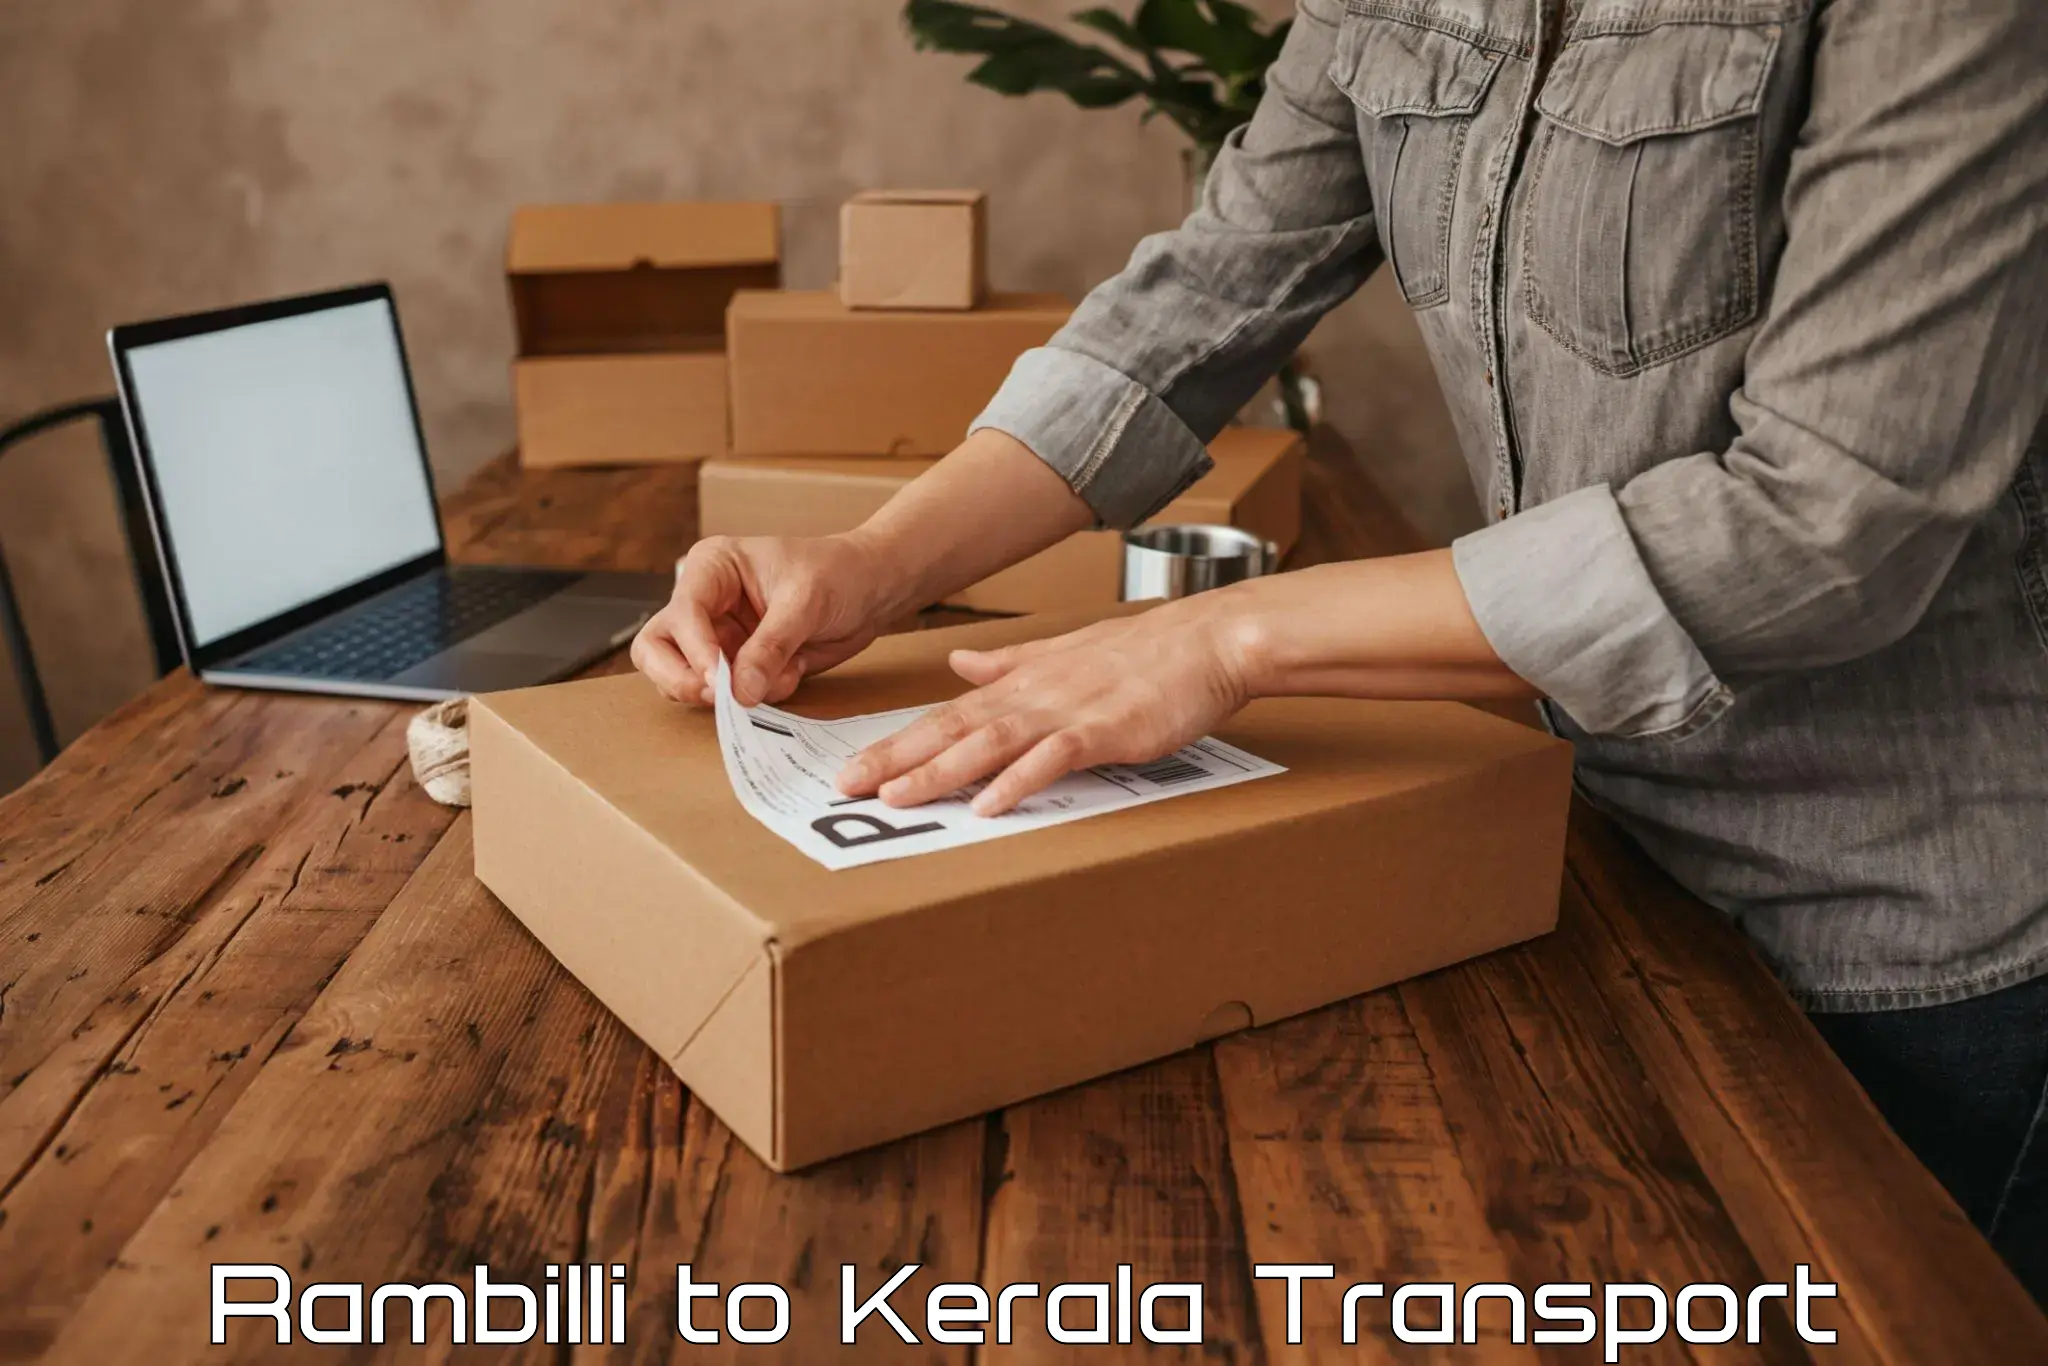 Transport in sharing Rambilli to Kallikkad